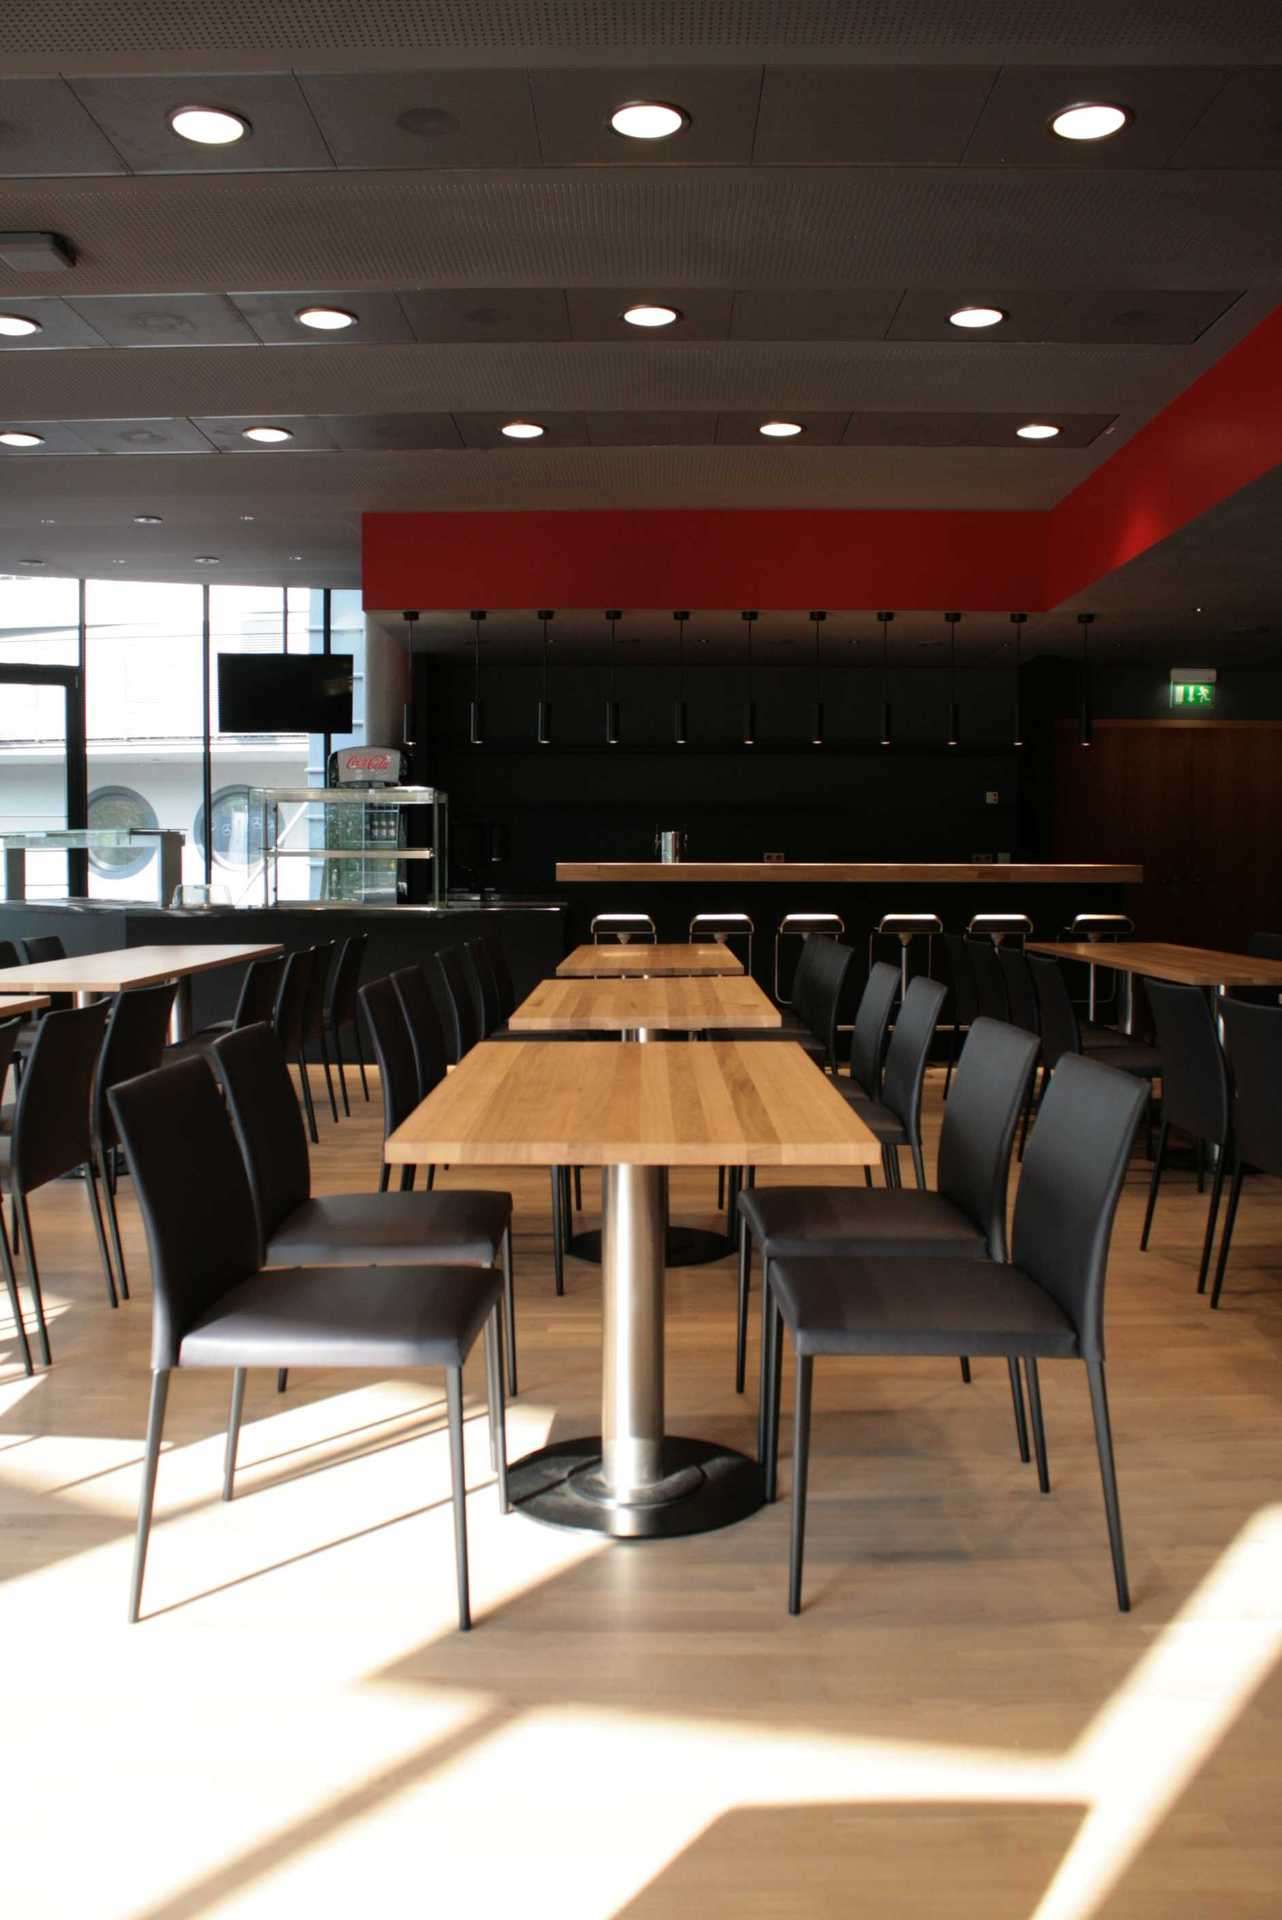 Esstische im Businessbereich des VfB Stuttgarts. Eiche Tische mit schlichten schwarzen Stühlen. Rotes Farbband an der Decke.